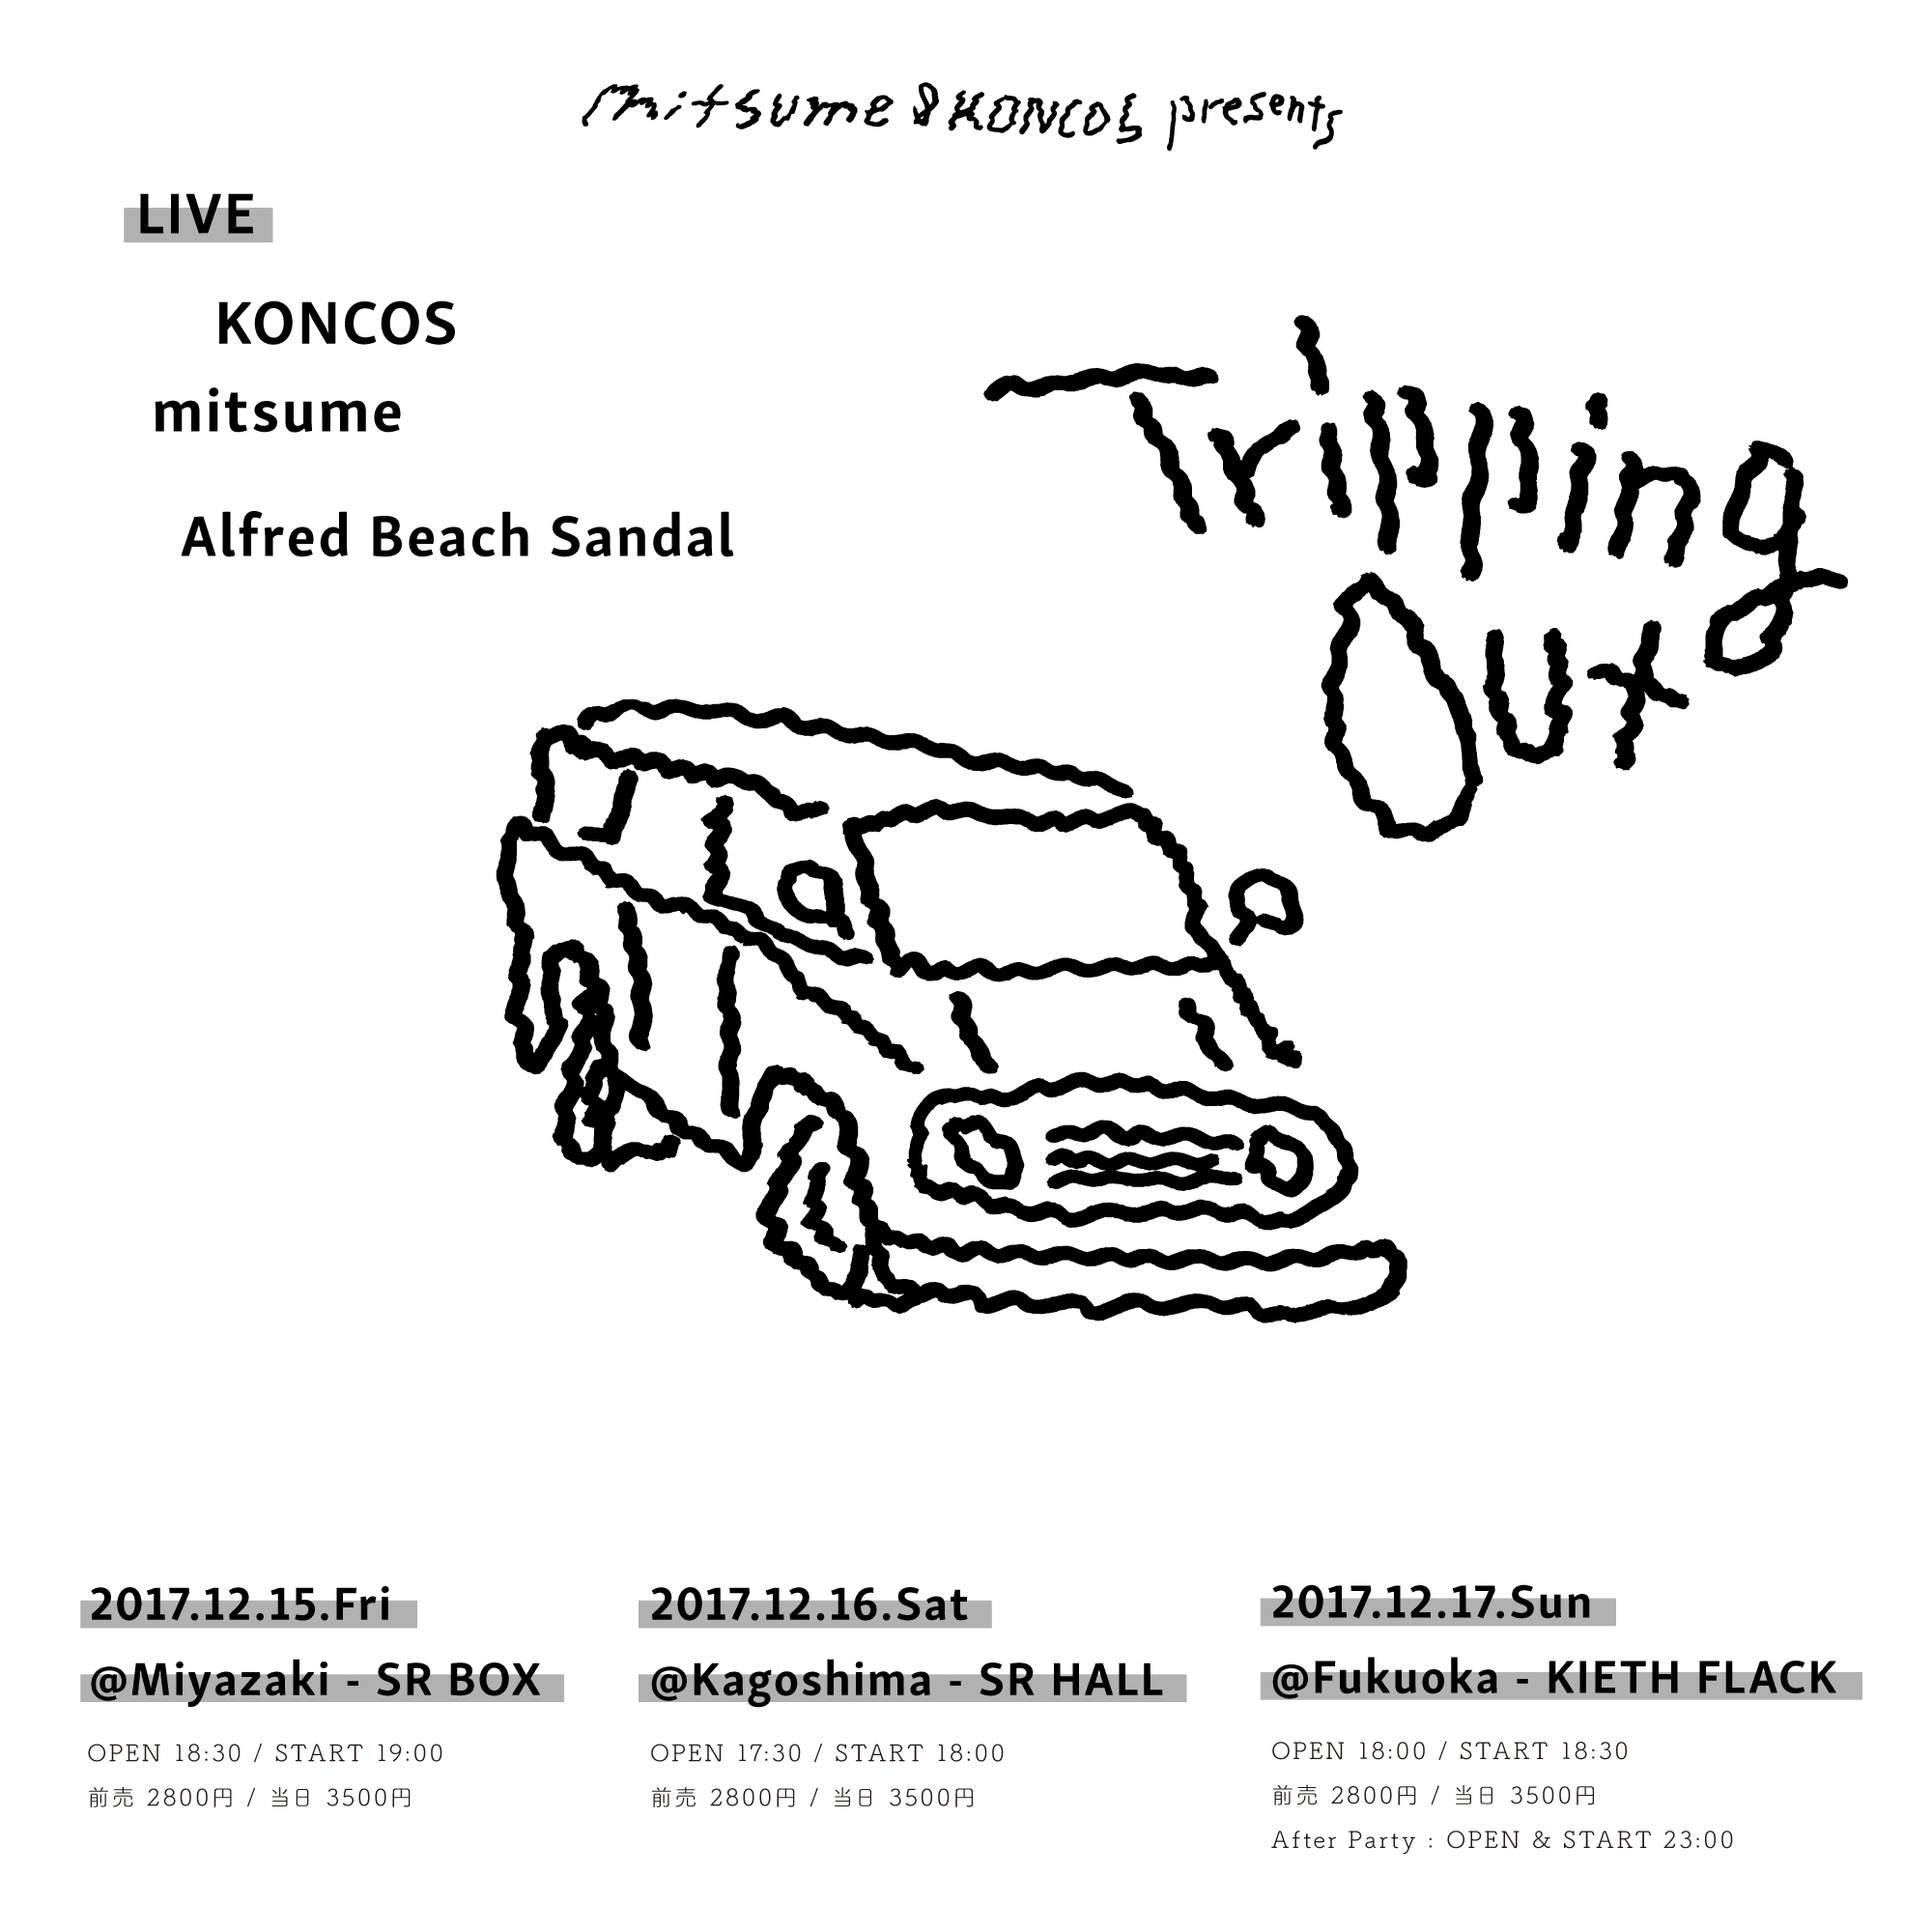 ミツメとKONCOSが「Tripping Out」を開催します。